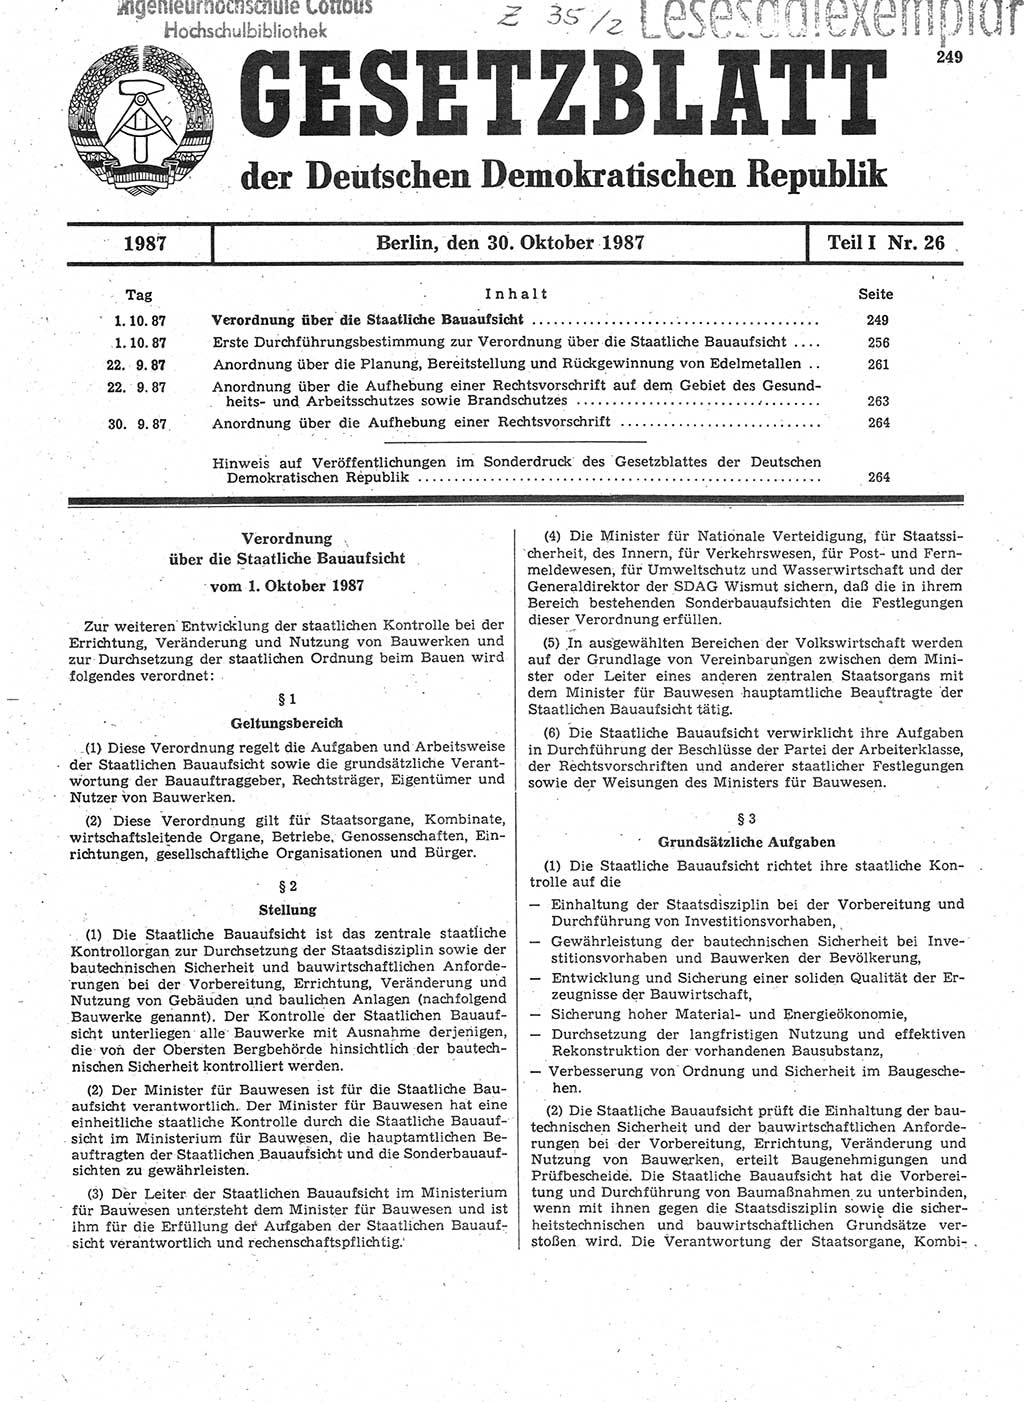 Gesetzblatt (GBl.) der Deutschen Demokratischen Republik (DDR) Teil Ⅰ 1987, Seite 249 (GBl. DDR Ⅰ 1987, S. 249)